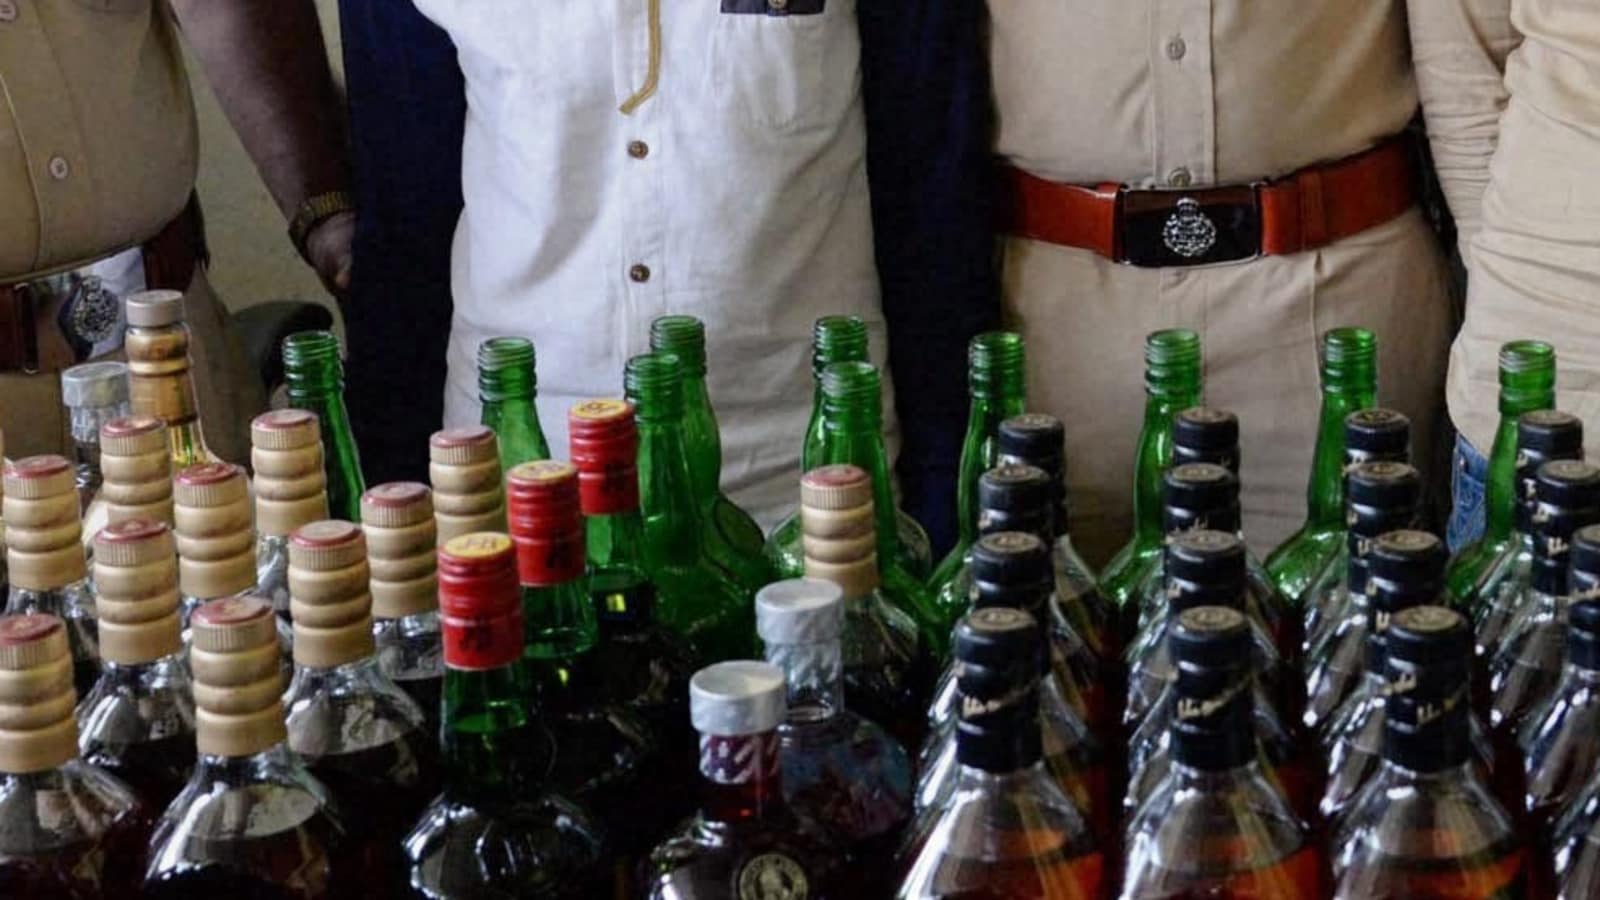 Illegal liquor consignment recovered in Muzaffarpur